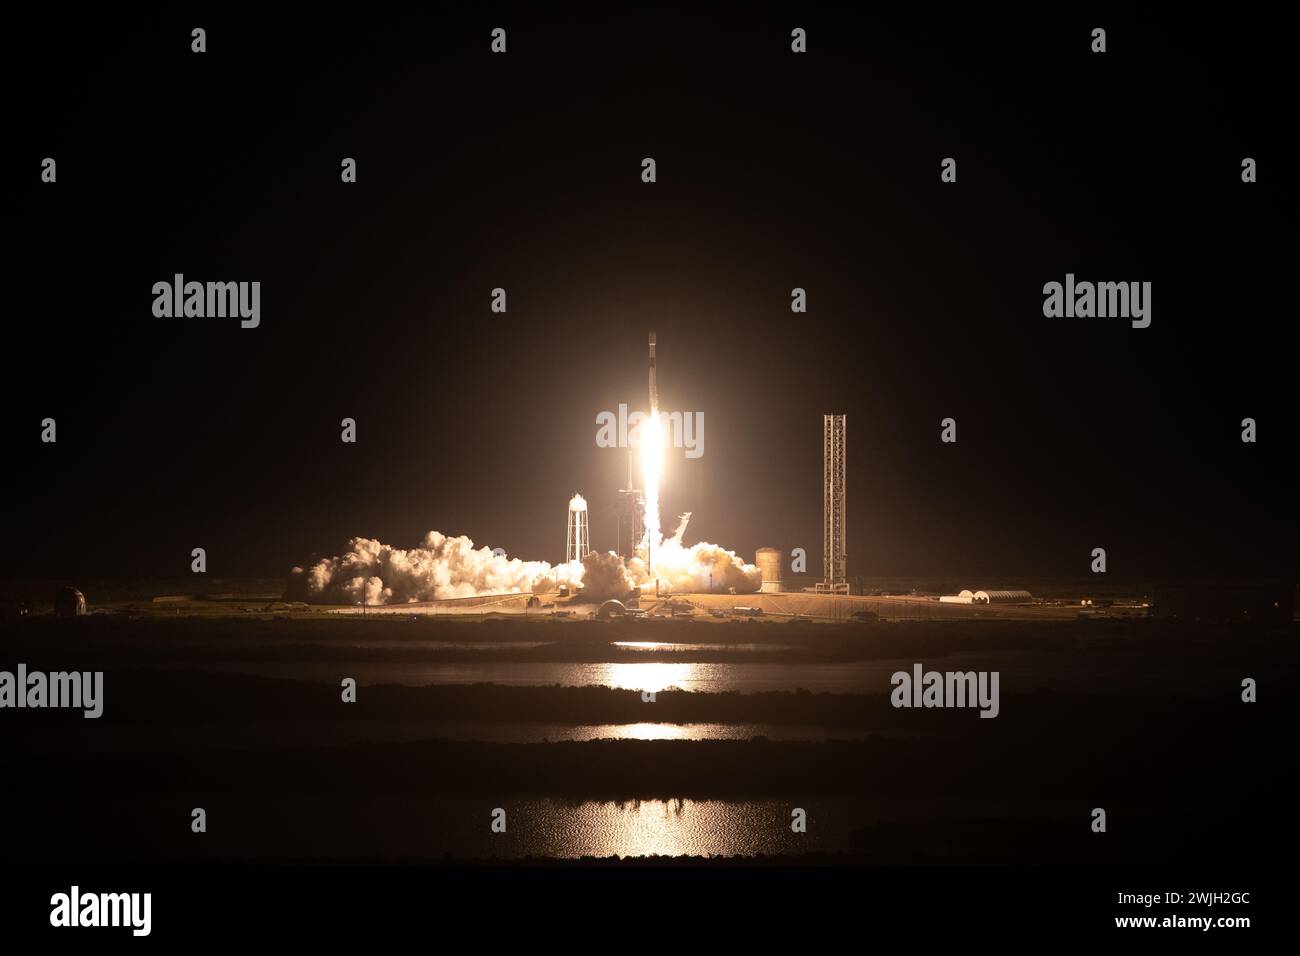 Un razzo Falcon 9 SpaceX che trasporta un lander lunare Nova-C di macchine intuitive si solleva dalla piattaforma di lancio 39A al Kennedy Space Center della NASA in Florida al numero 1 Foto Stock